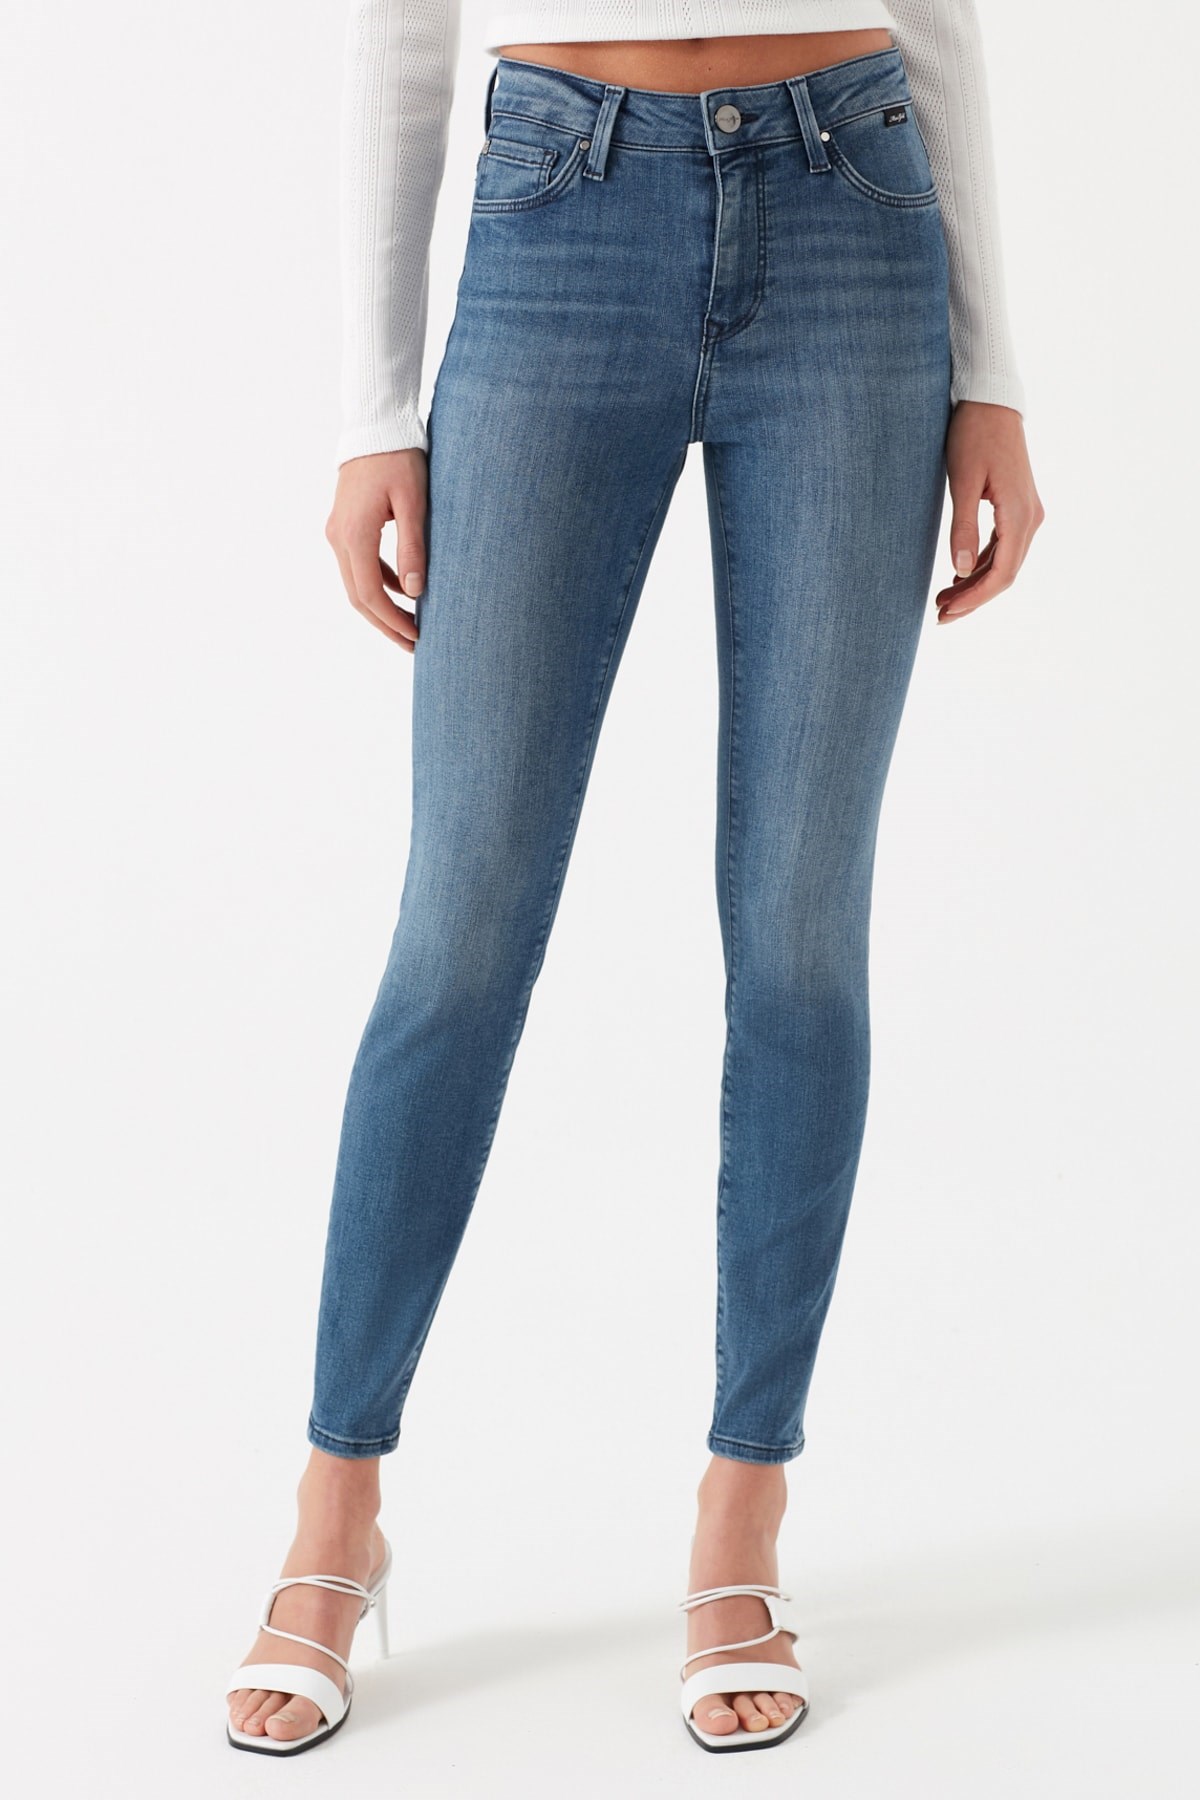 Mavi Jeans Kadın Pantolon 100328-31061 